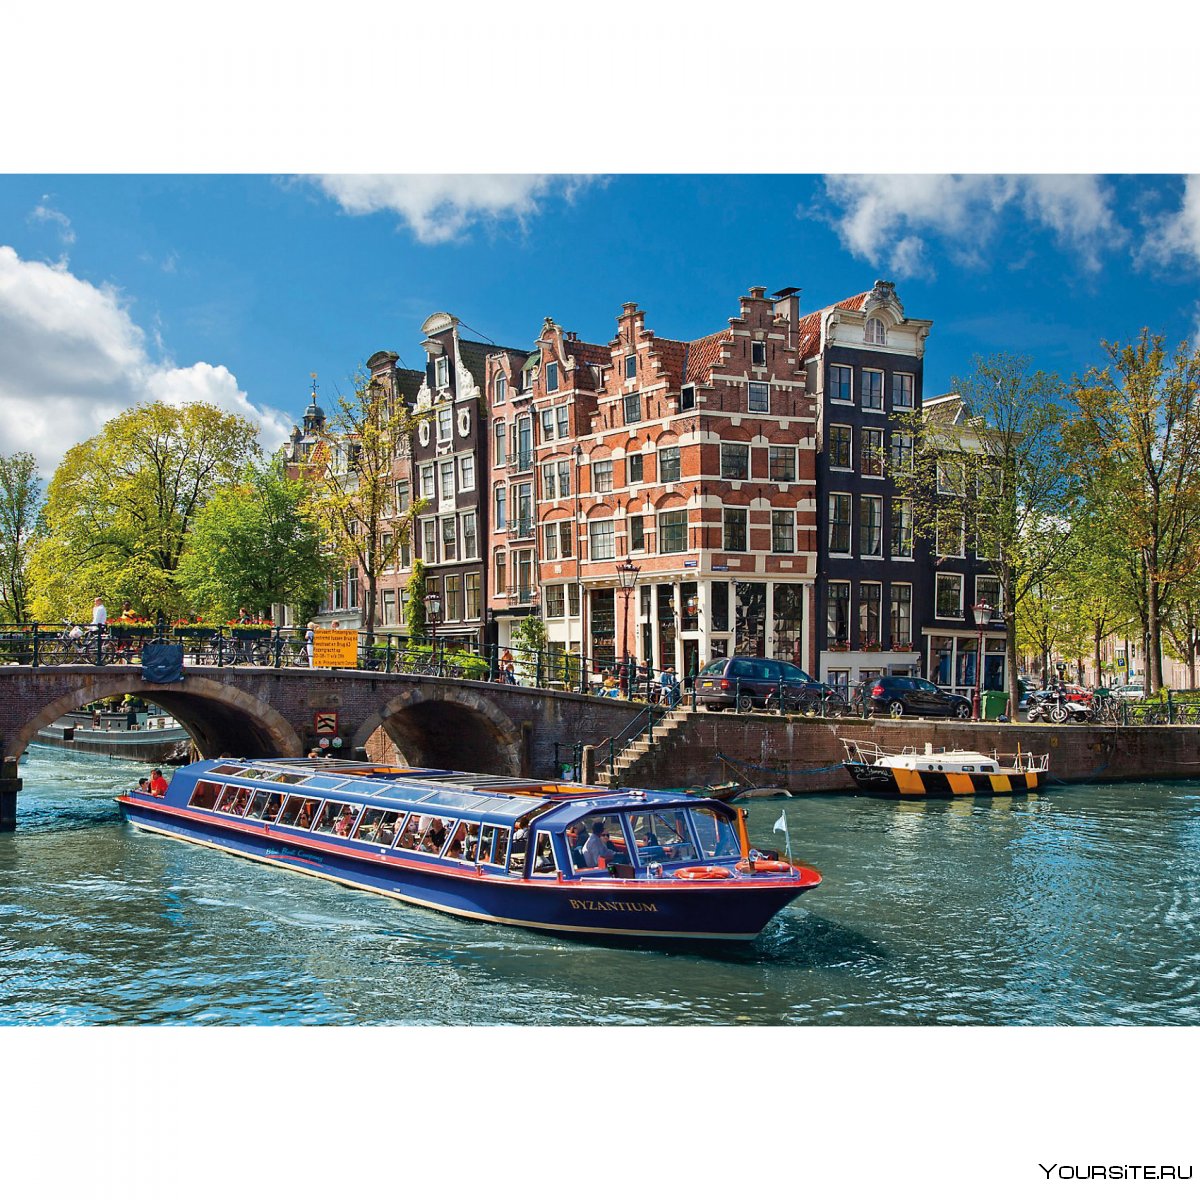 Императорский канал в Амстердаме